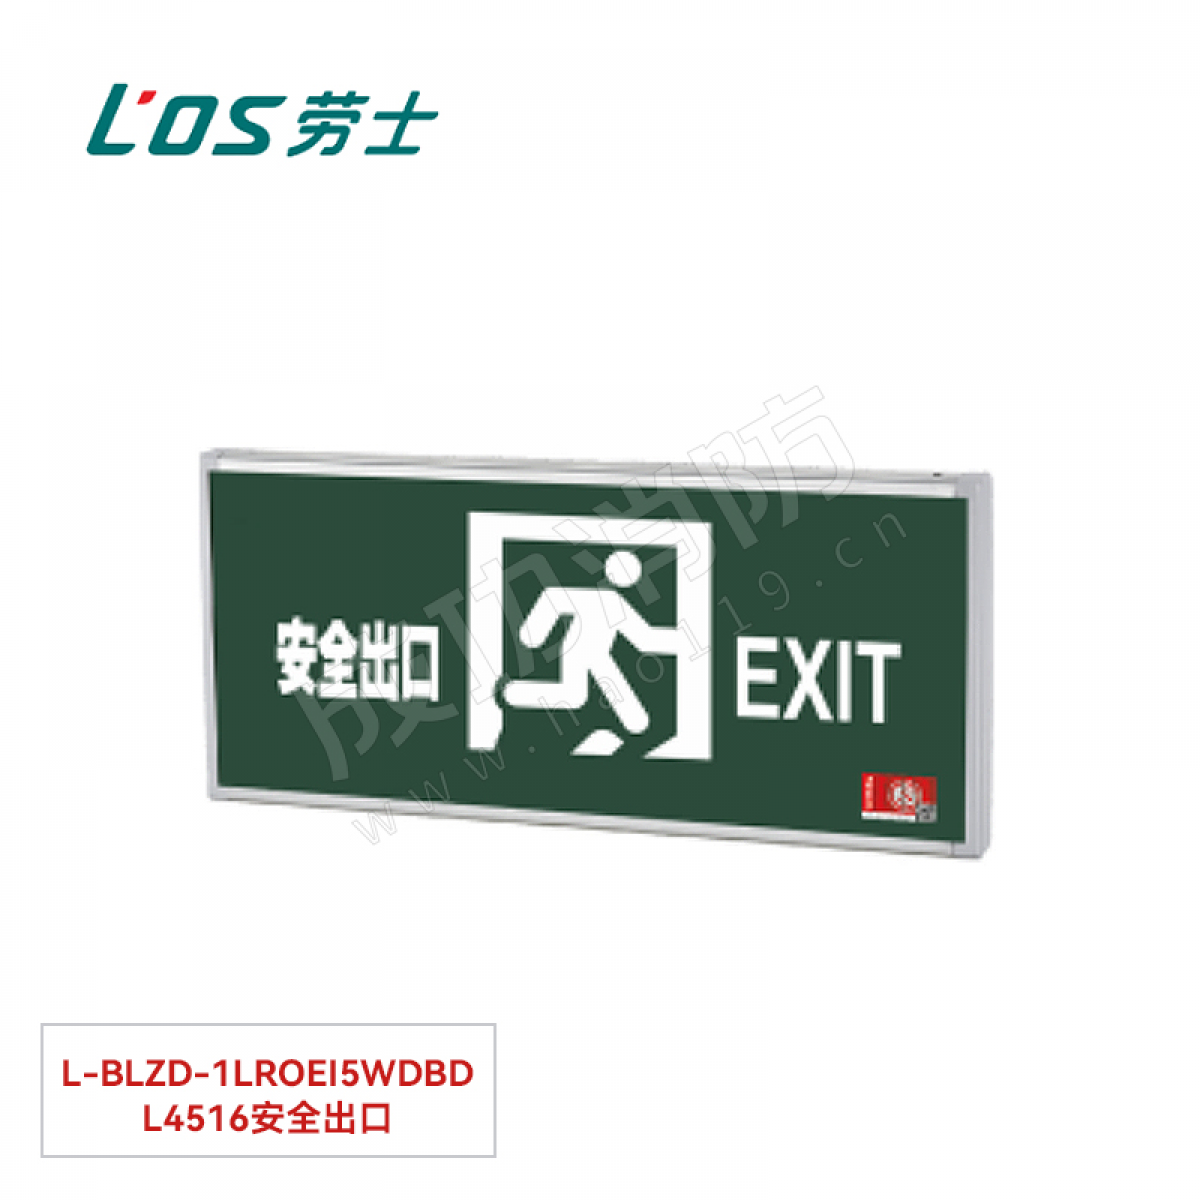 劳士 消防应急标志灯(壁挂安装) L-BLZD-1LROEⅠ5WDBD L4516安全出口